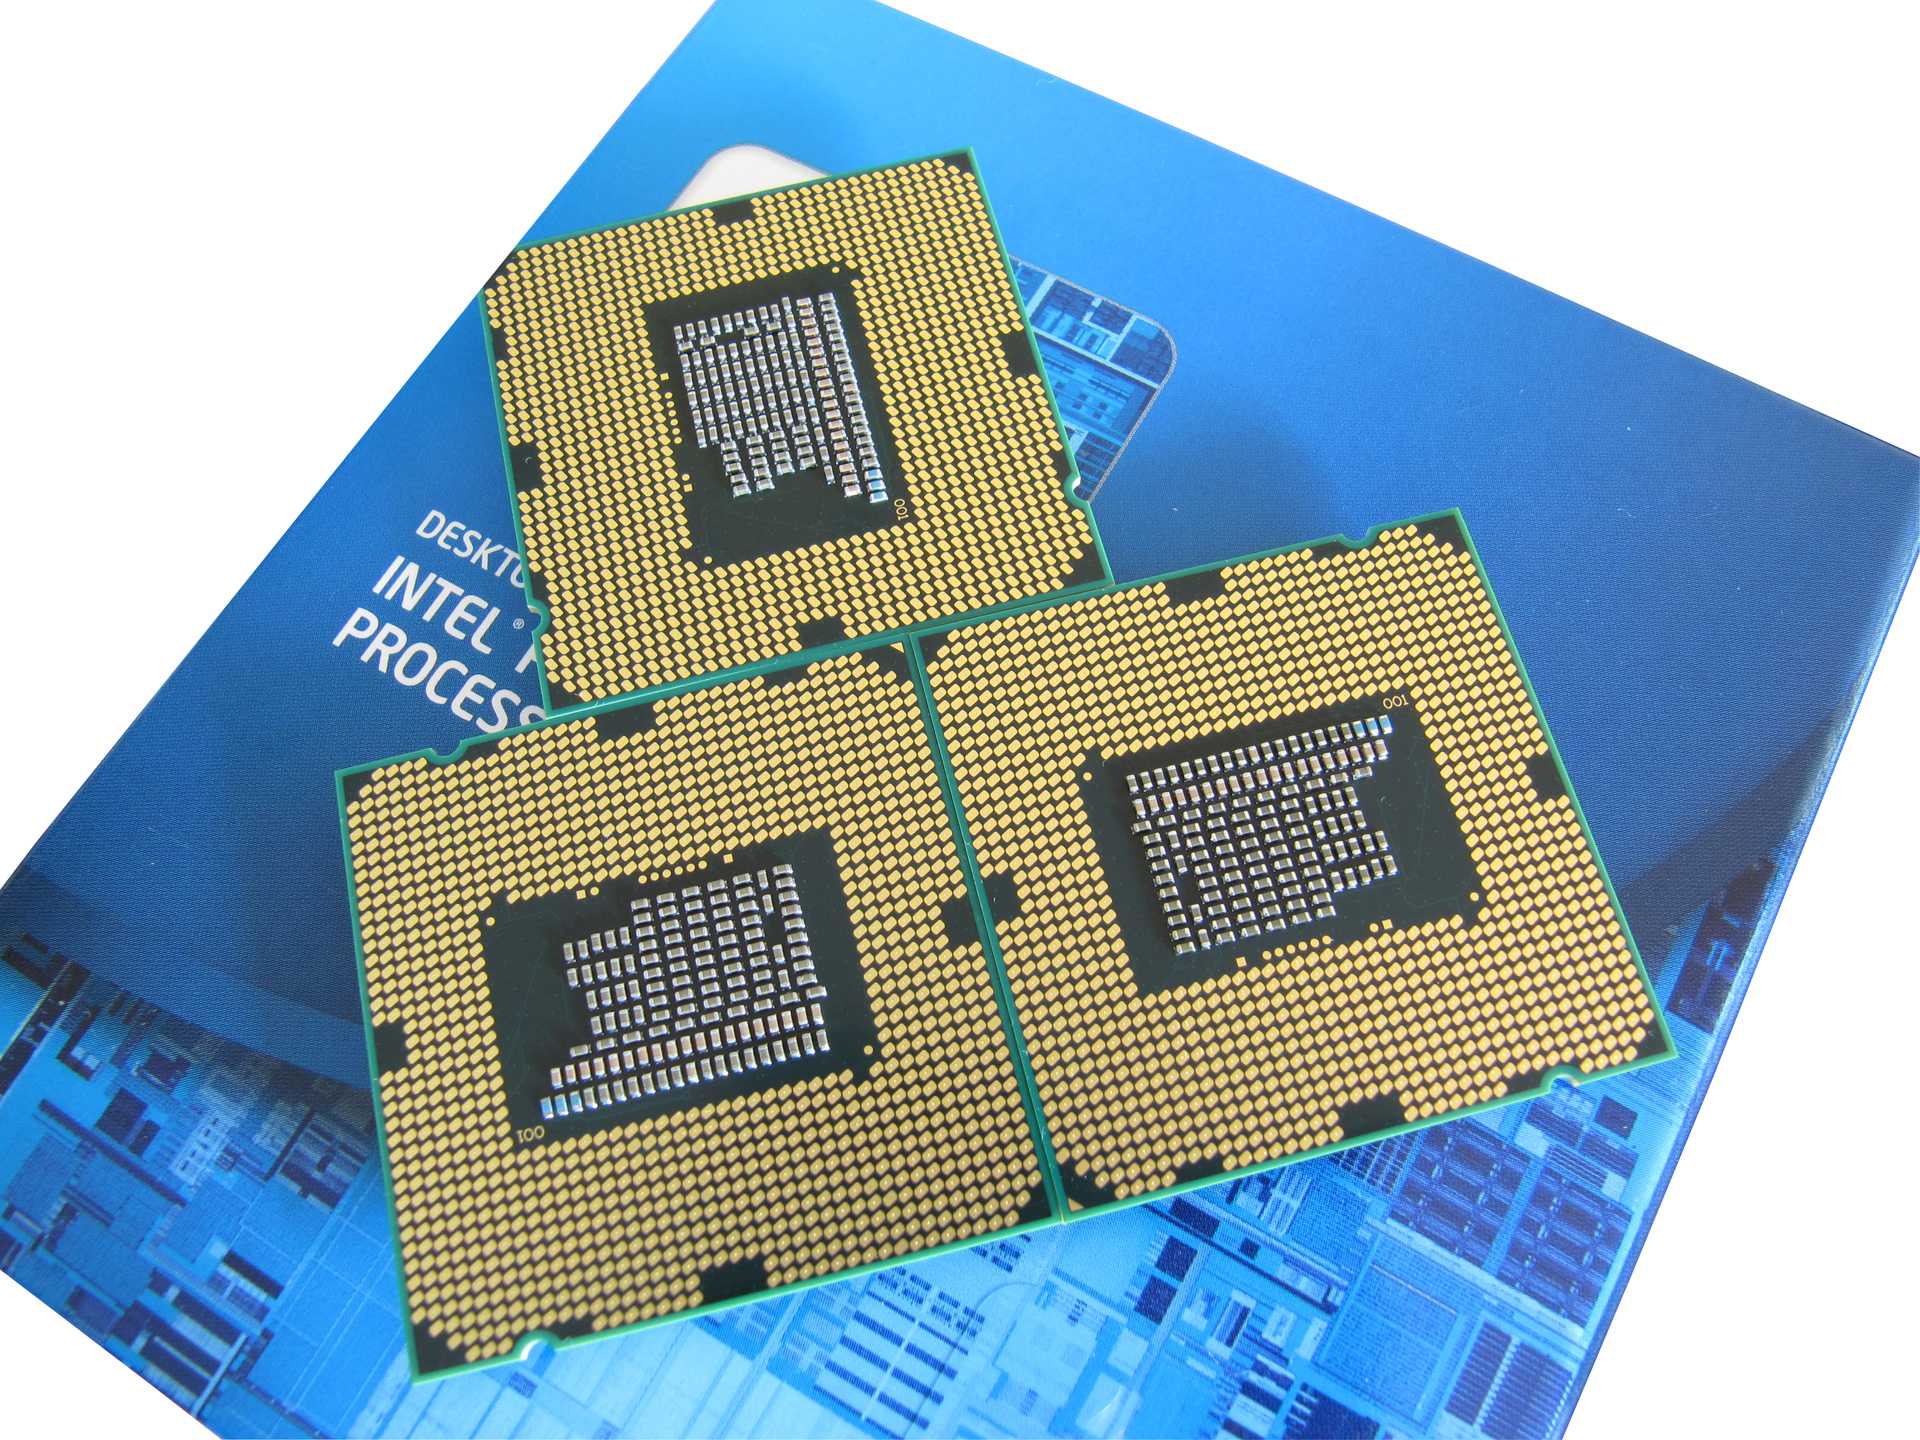 Хорошие процессоры для смартфонов для игр. Intel Pentium g620. Pentium 5405u. Intel Pentium игровой процессор. Процессор Intel Pentium 5405u класса Gold.